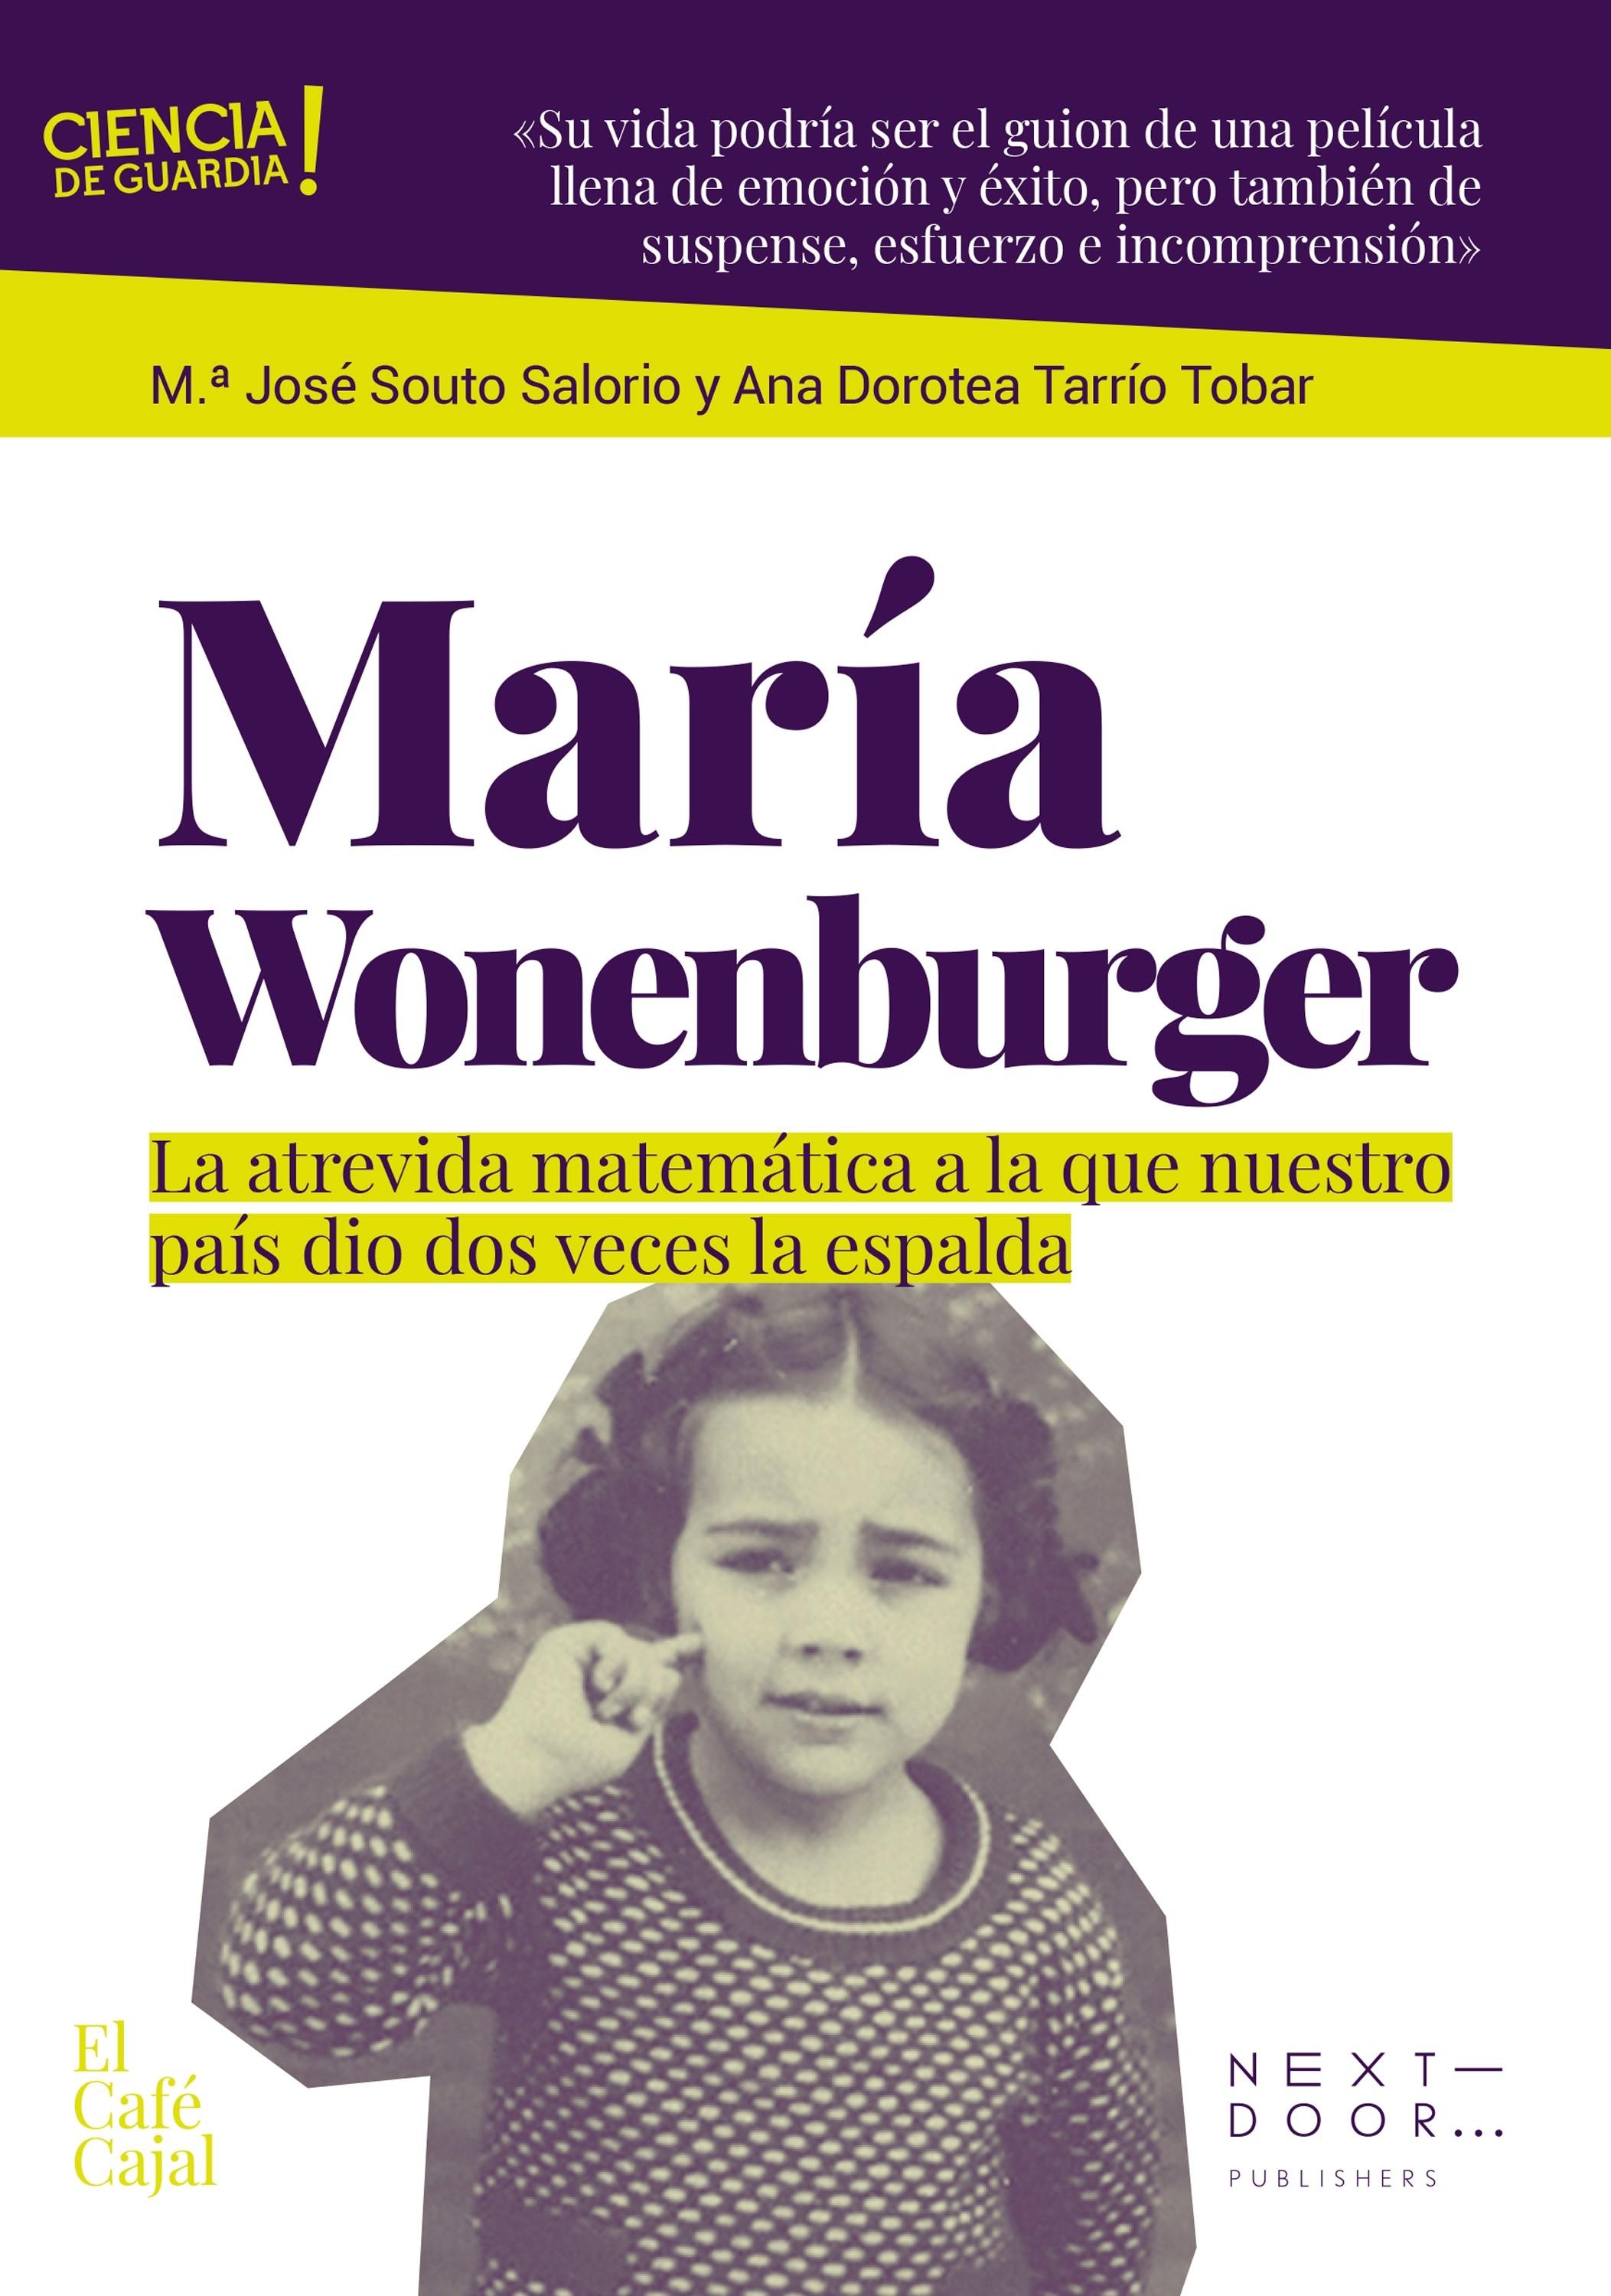 María Wonenburger "La Atrevida Matemática a la que nuestro País le Dio Dos Veces la Espalda". 